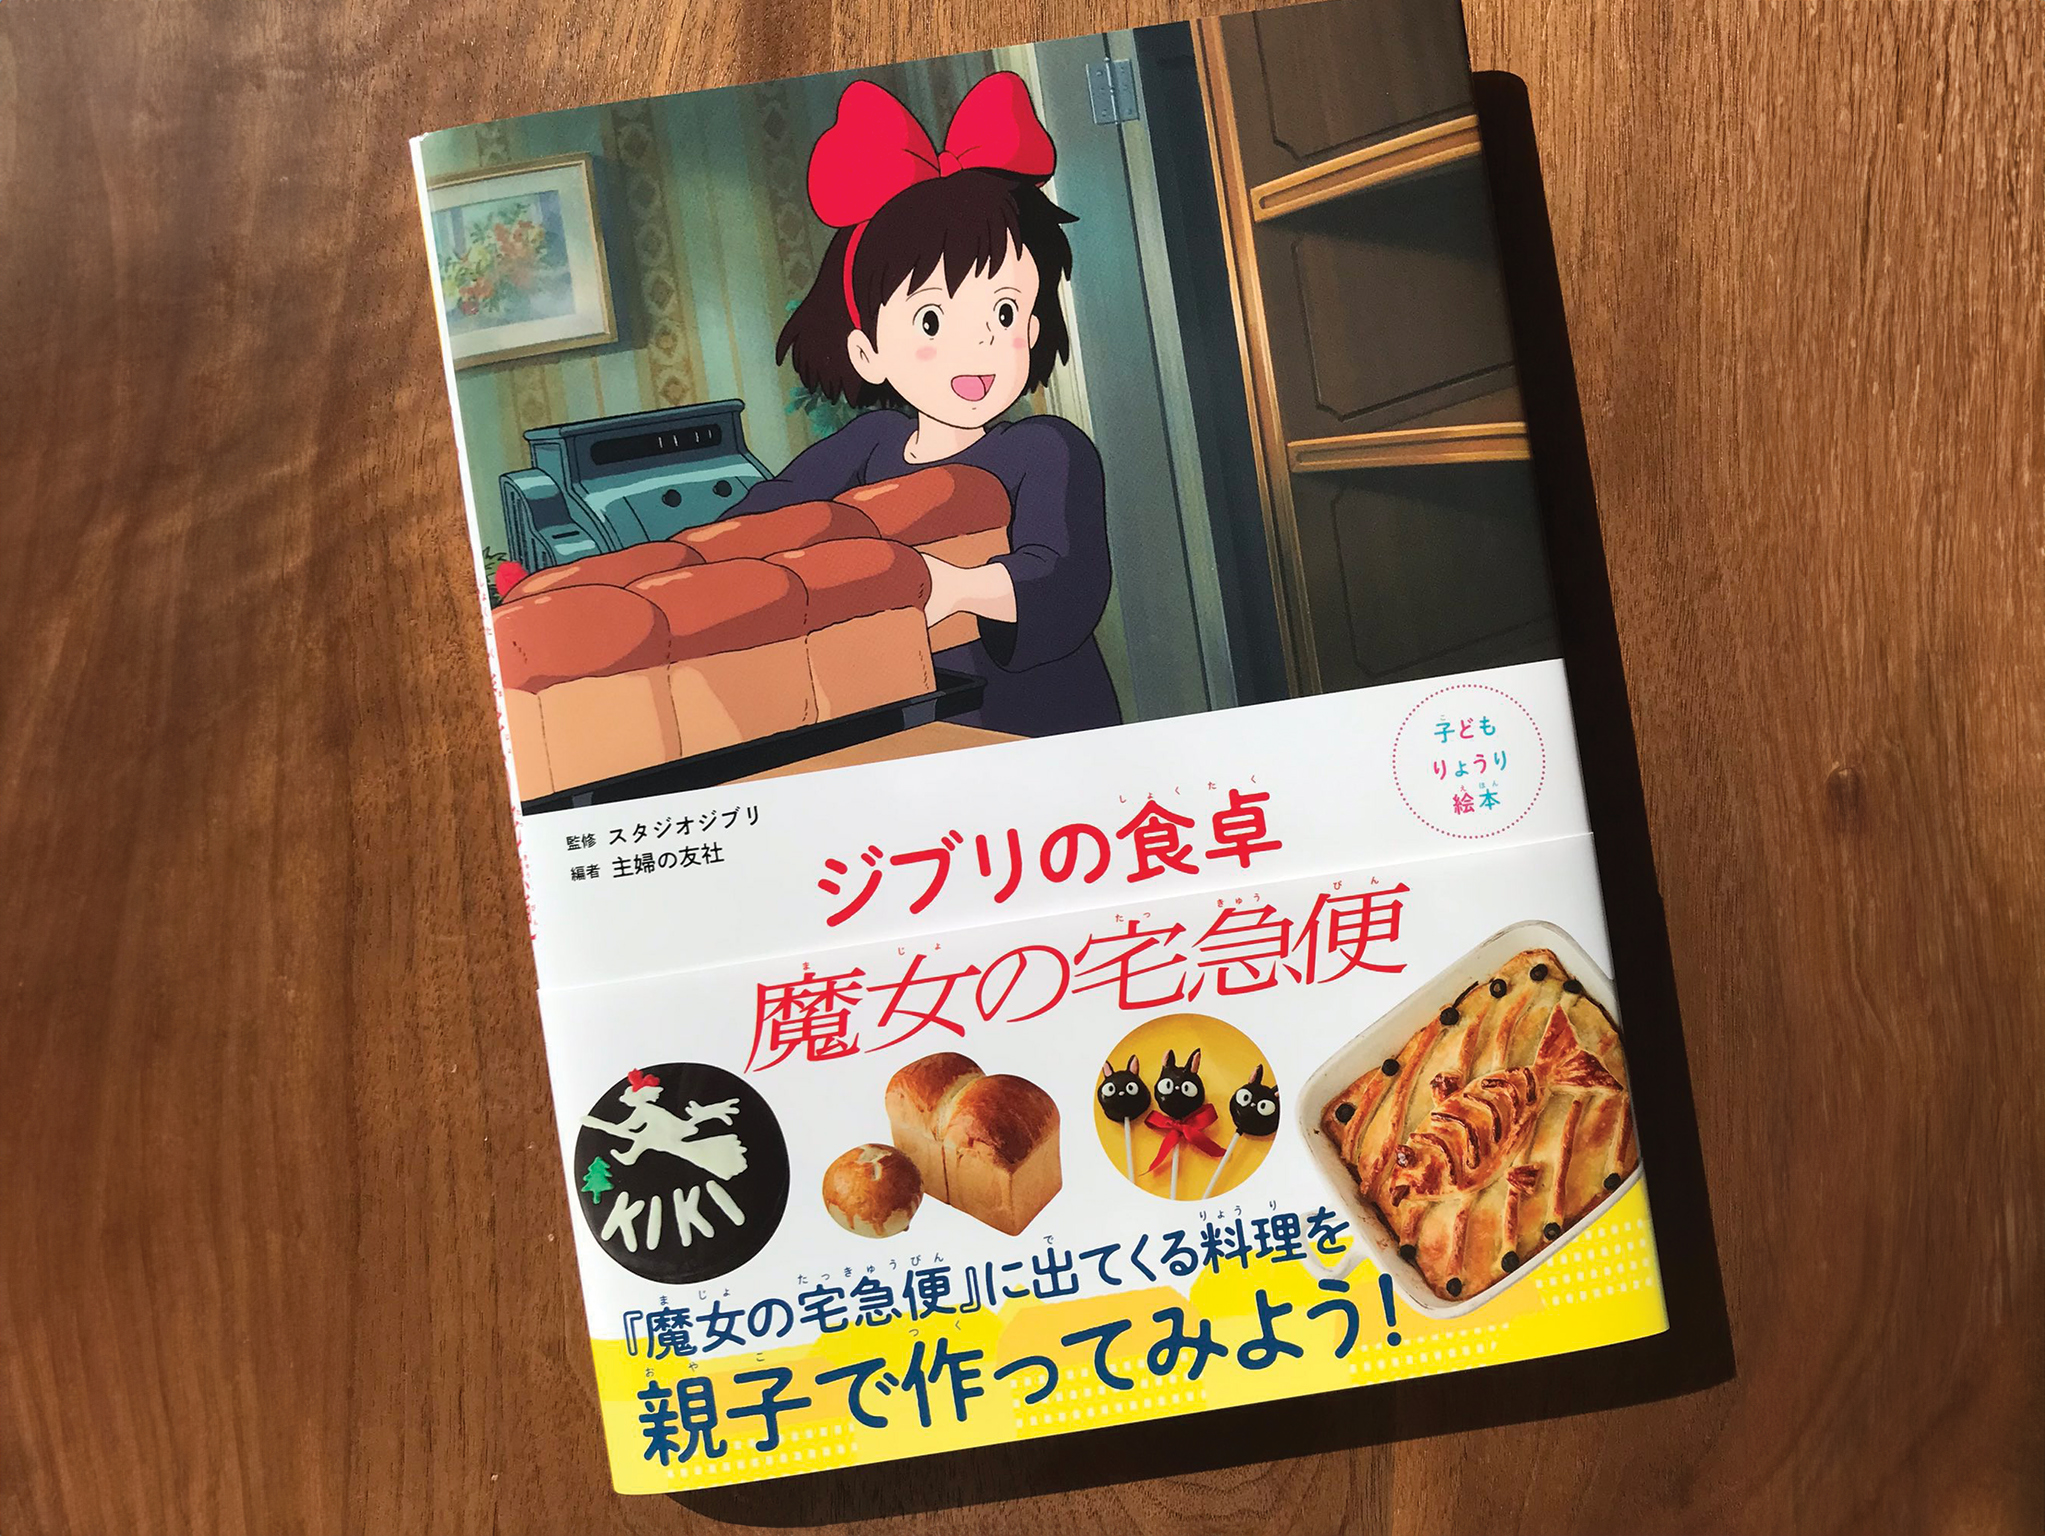 ghibli food cook book